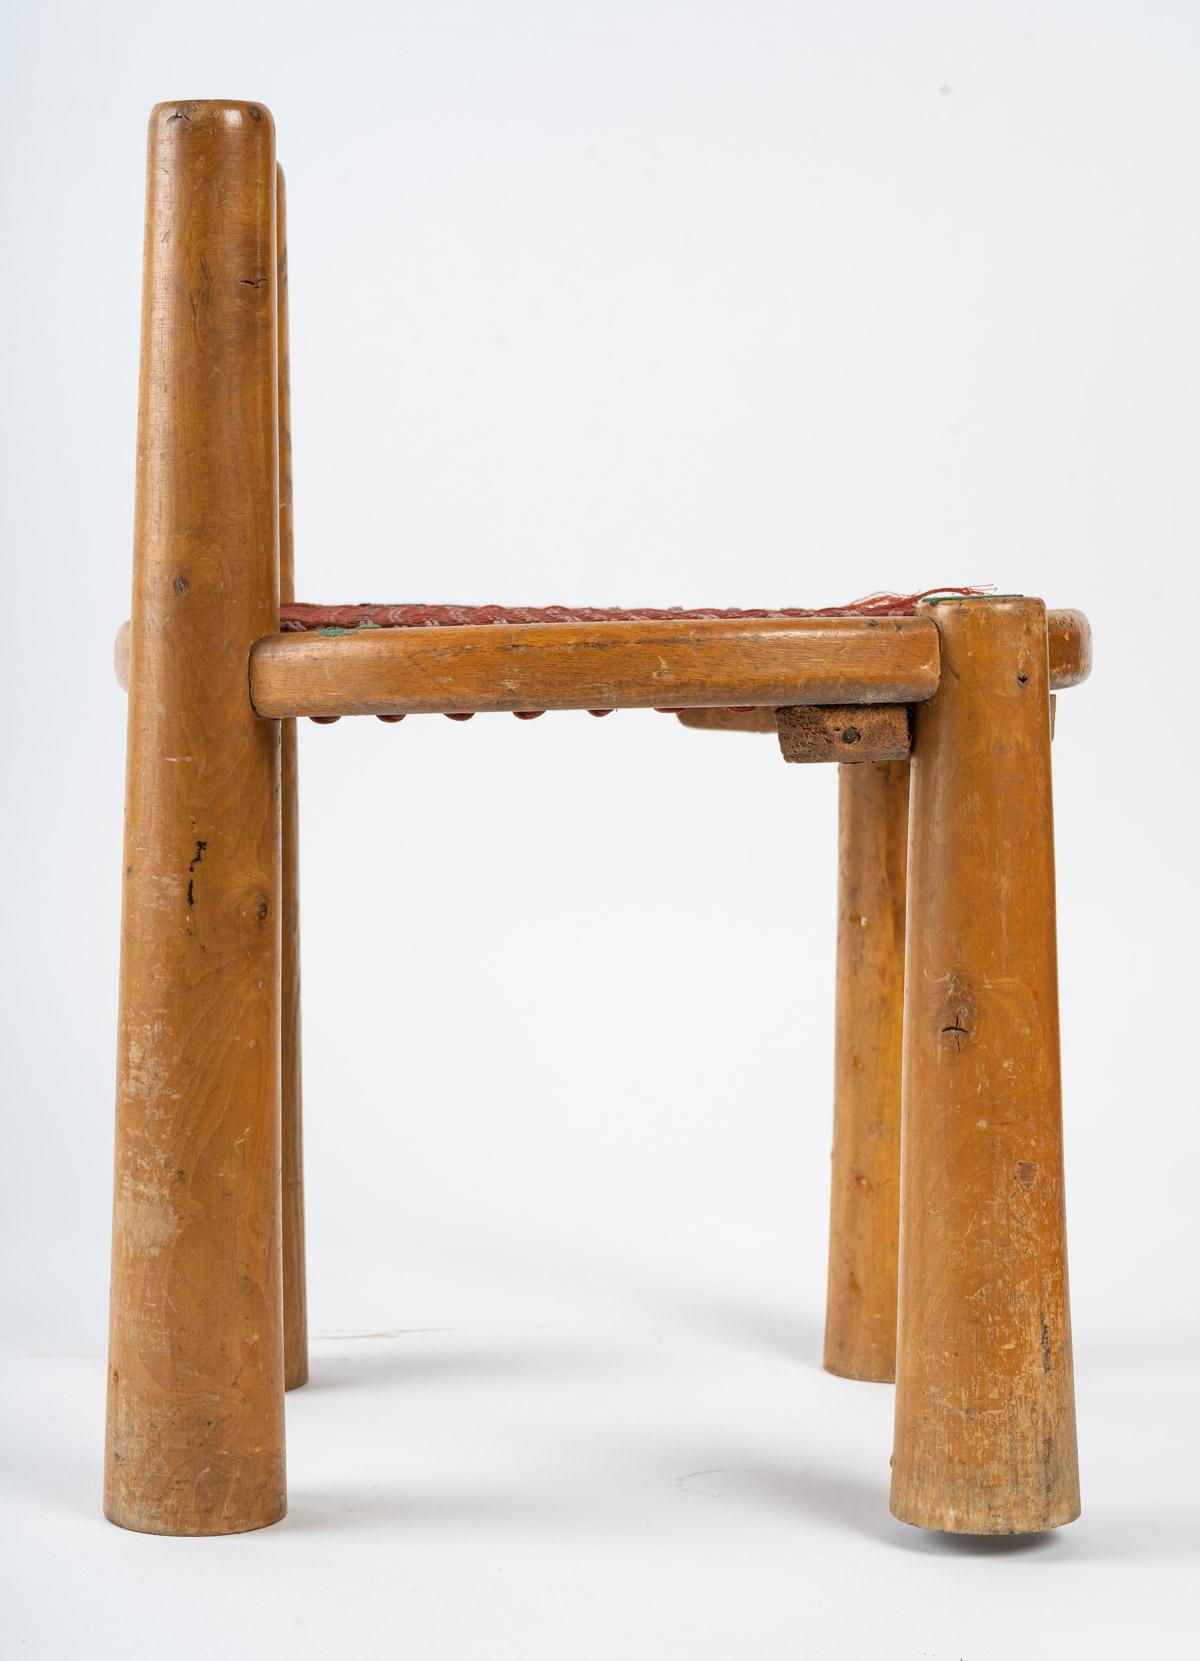 Children's chair, 1950.
Measures: H 39 cm, W 29 cm, D 27 cm.